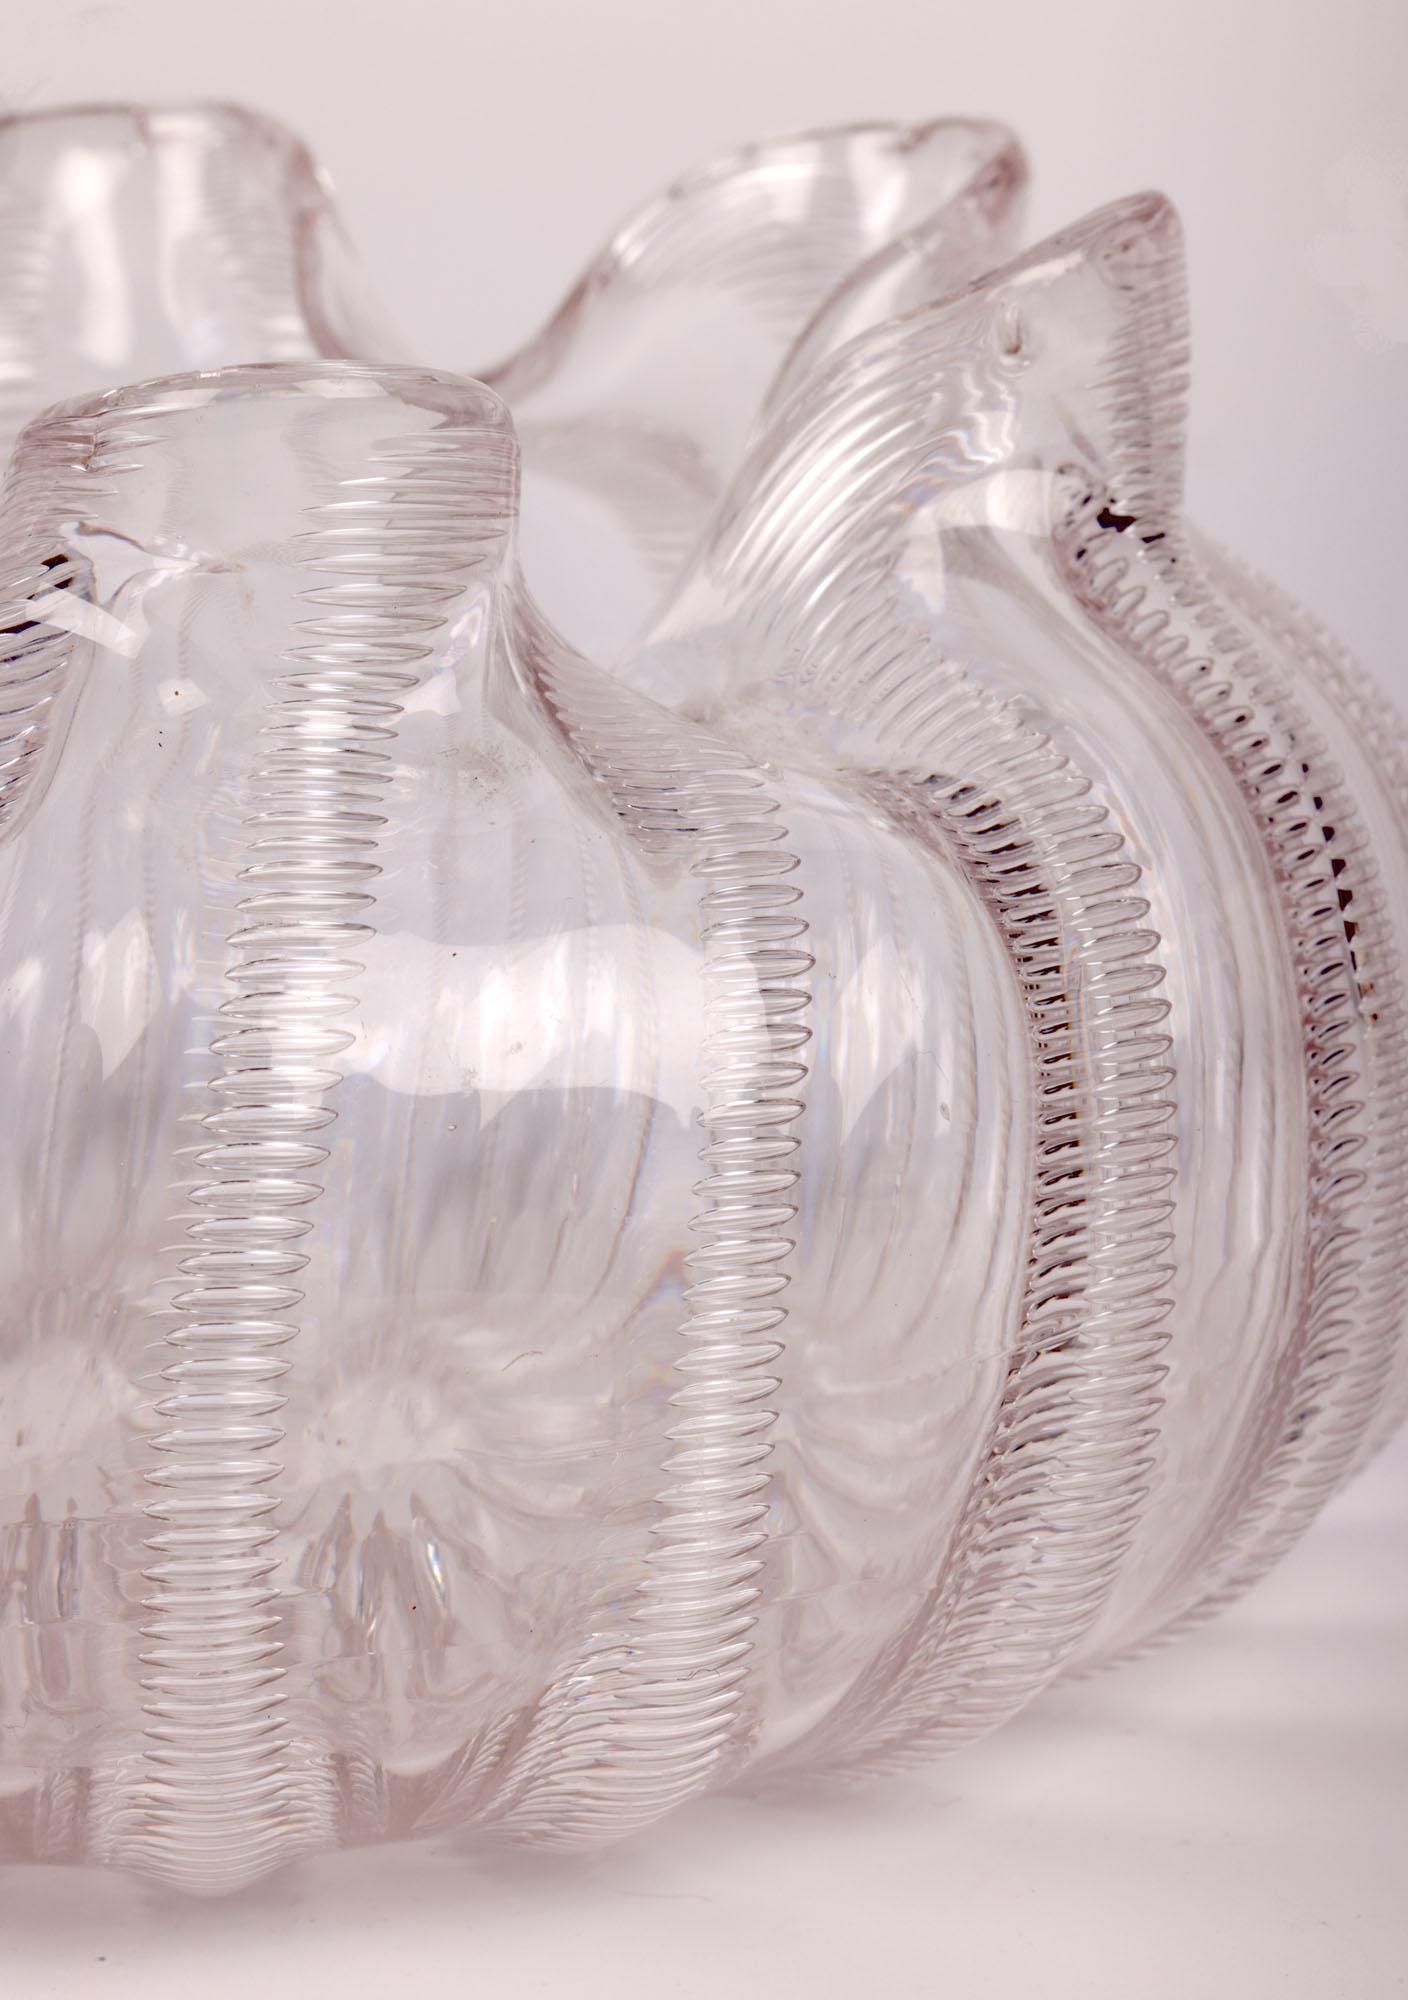 Eine qualitativ hochwertige englische Glasschale mit Jewell-Muster von Stevens & Williams, einem renommierten Glashersteller aus Stourbridge, datiert 1886. Die Kristallglasschale hat eine breite, runde Form und ist mundgeblasen mit einem leichten